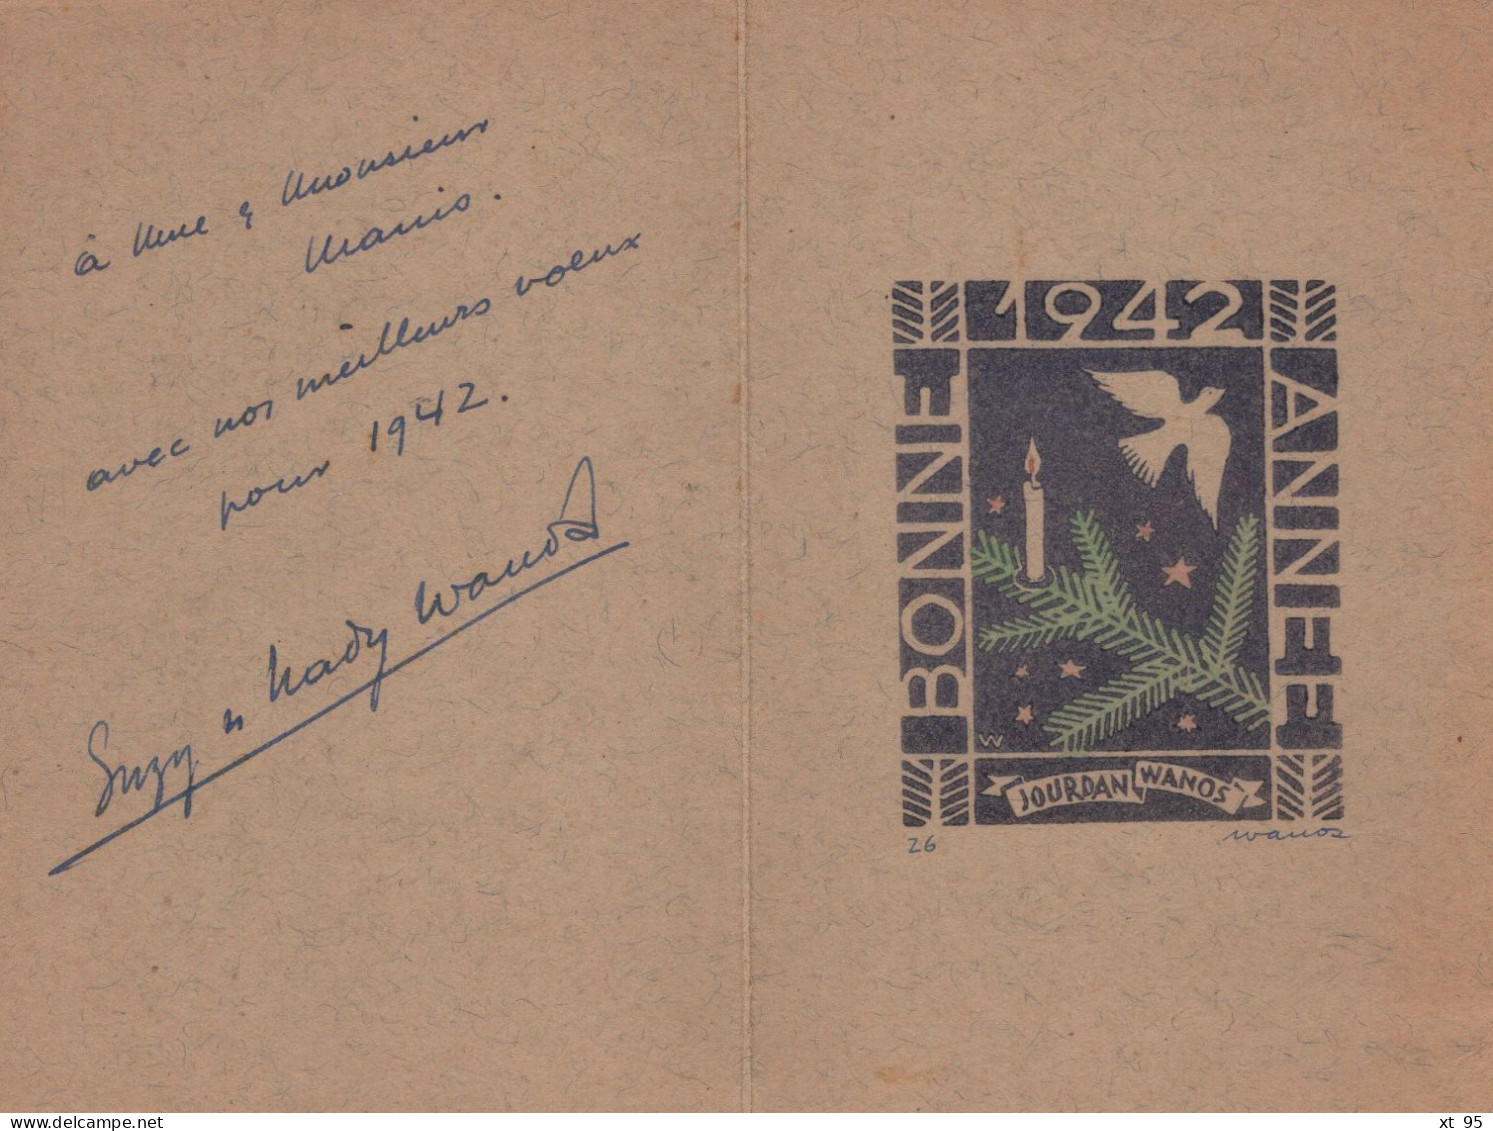 Lot De 5 Cartes De Bonne Annee Avec Lithographies - Signees Leonard Wanos (philateliste Journaliste) 1941 à 1949 - Lithographies